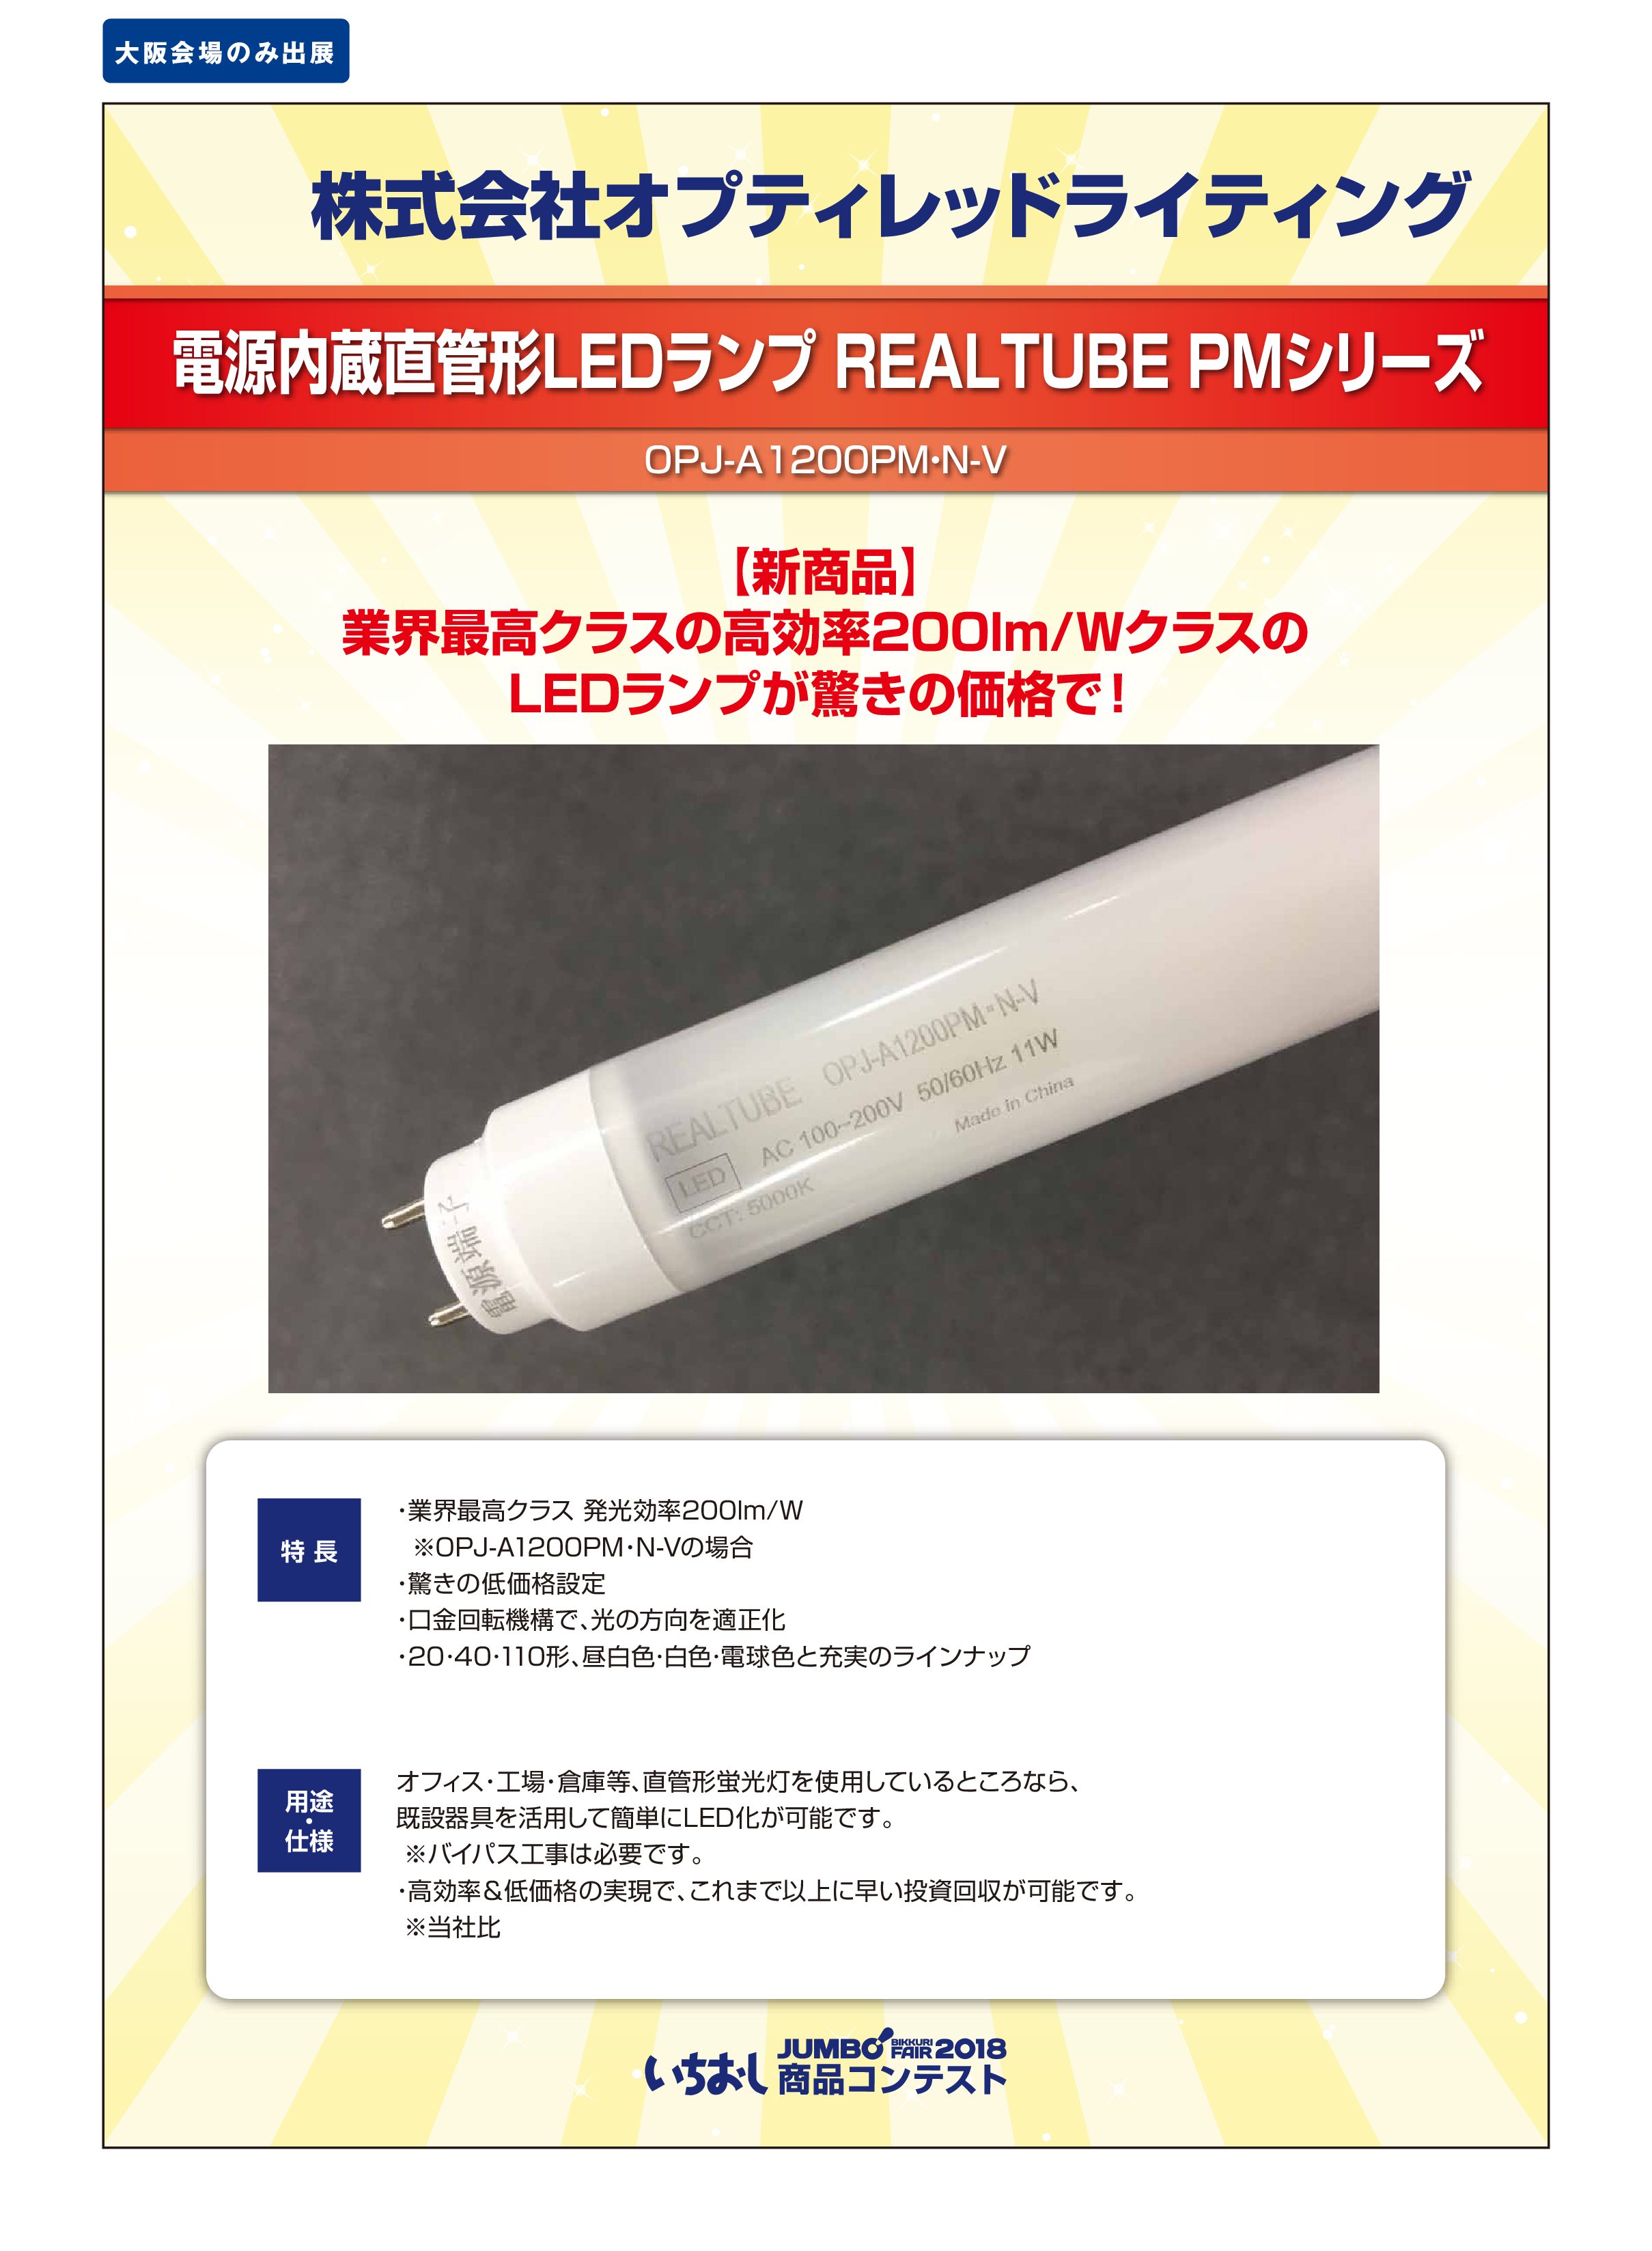 「電源内蔵直管形LEDランプ REALTUBE PMシリーズ」株式会社オプティレッドライティングの画像